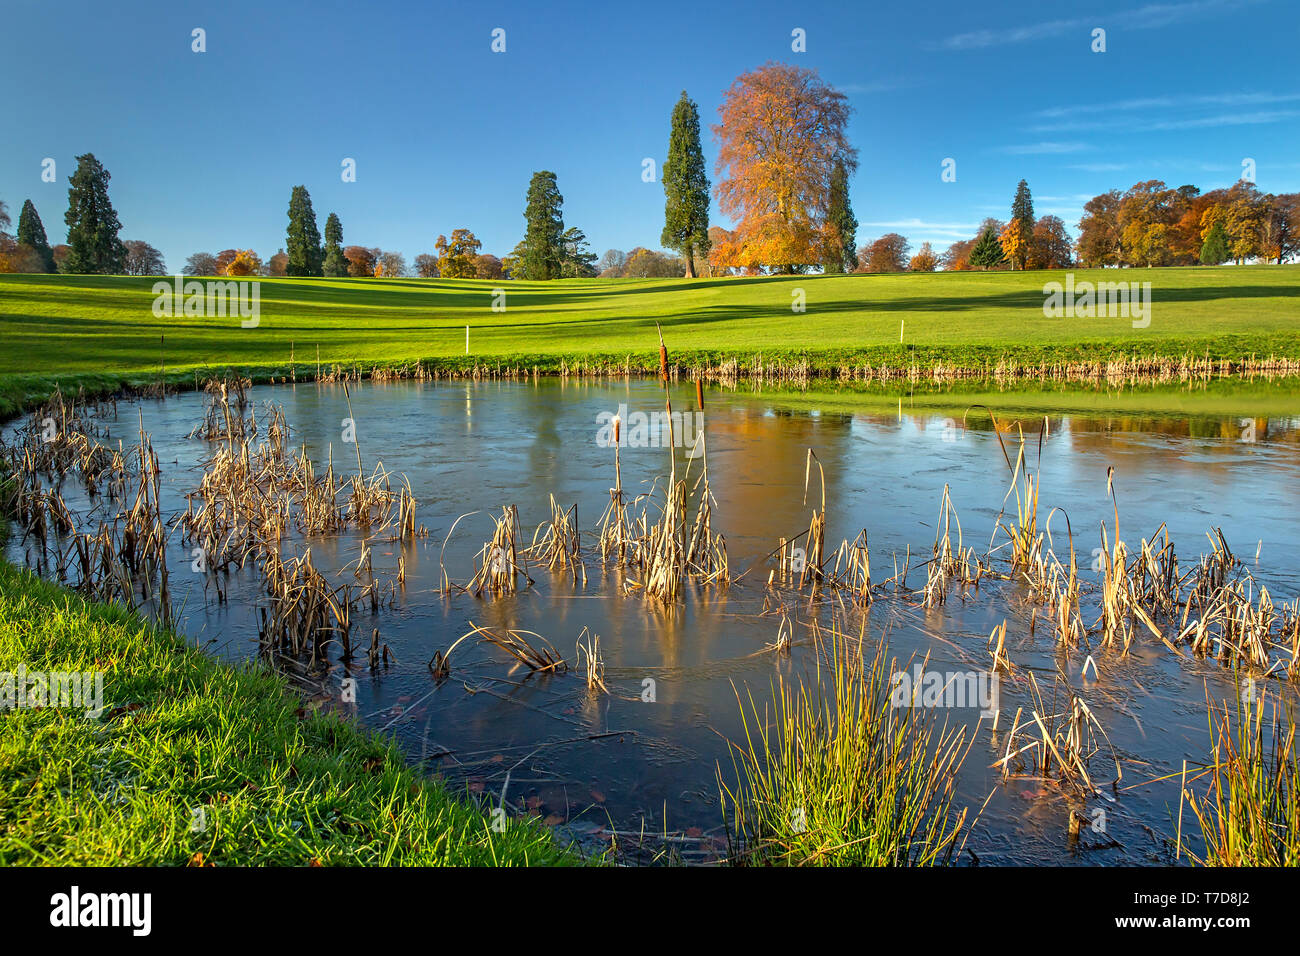 Rushmore Park Golf Club à l'automne. Wiltshire UK. Banque D'Images